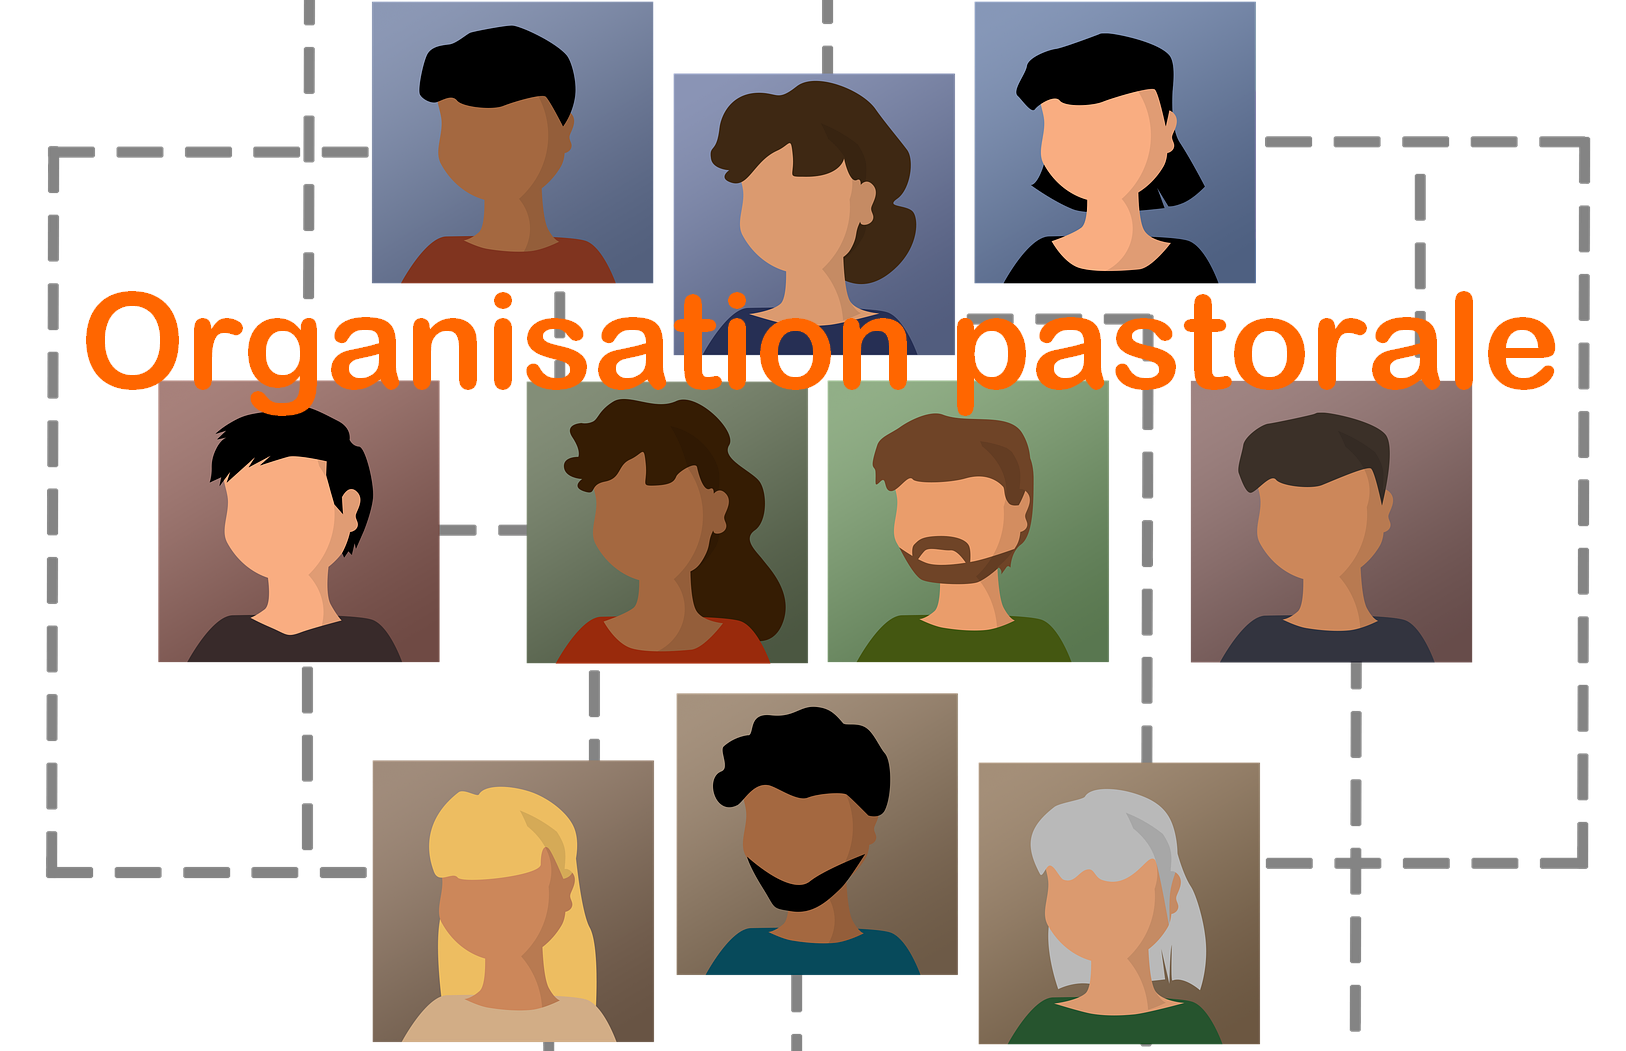 Organisation pastorale du diocèse de Pamiers